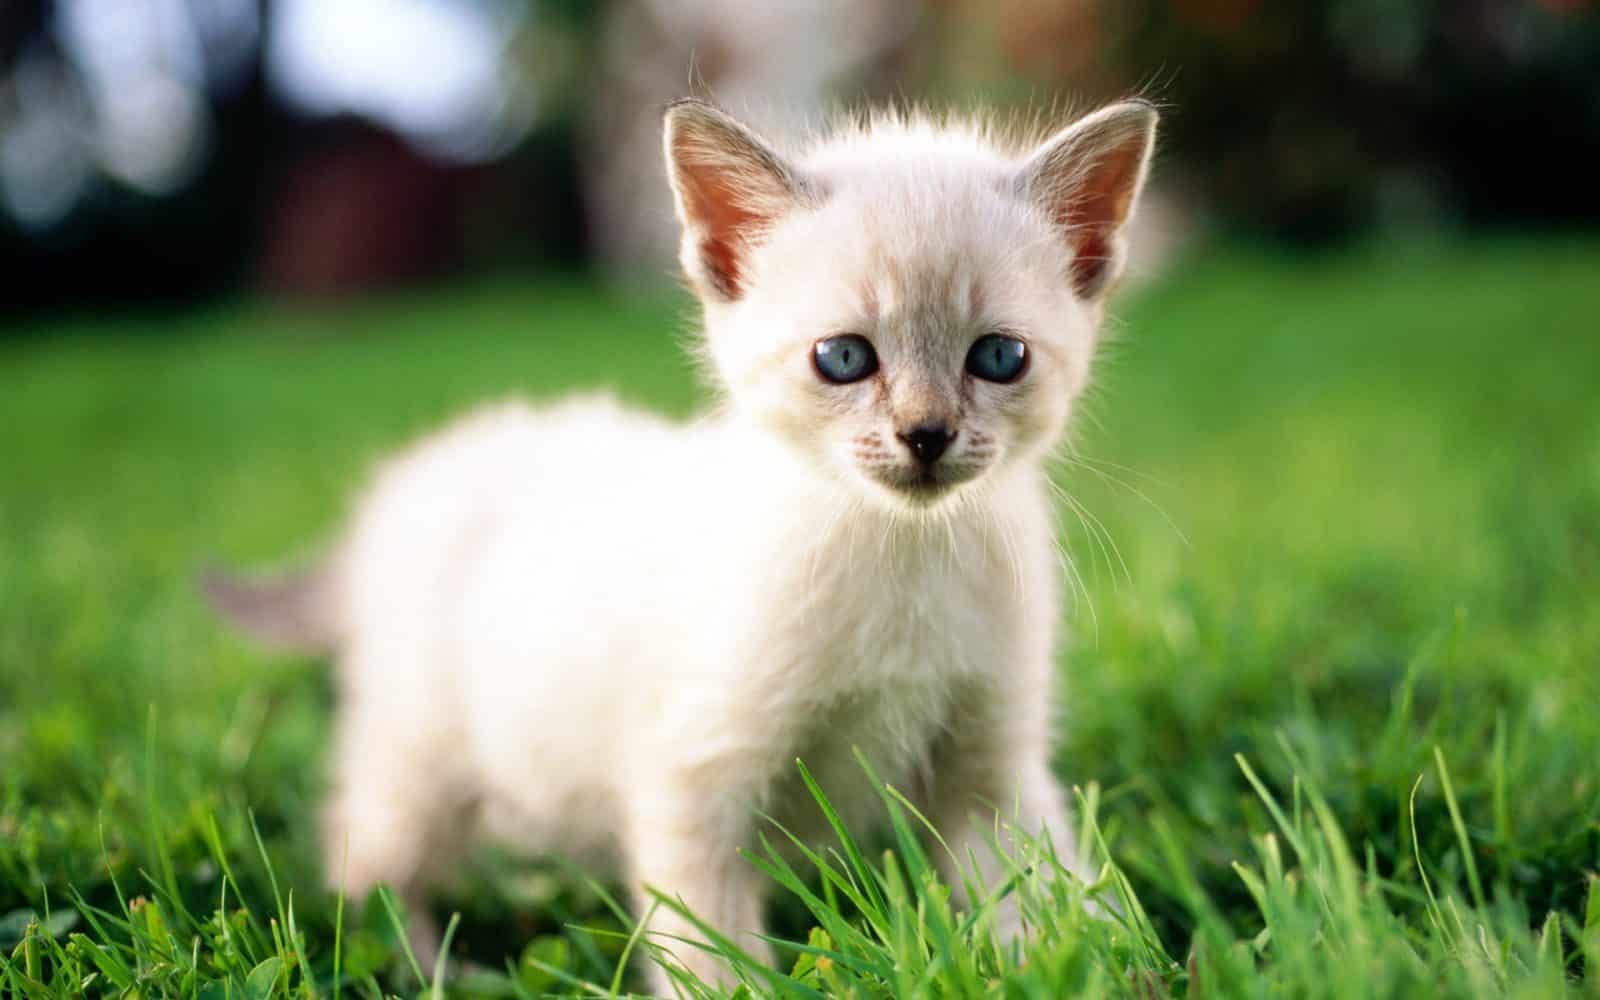  ♥مكتبة صور قـطط♥ - صفحة 49 White-cats-are-beautiful-30-photos-8